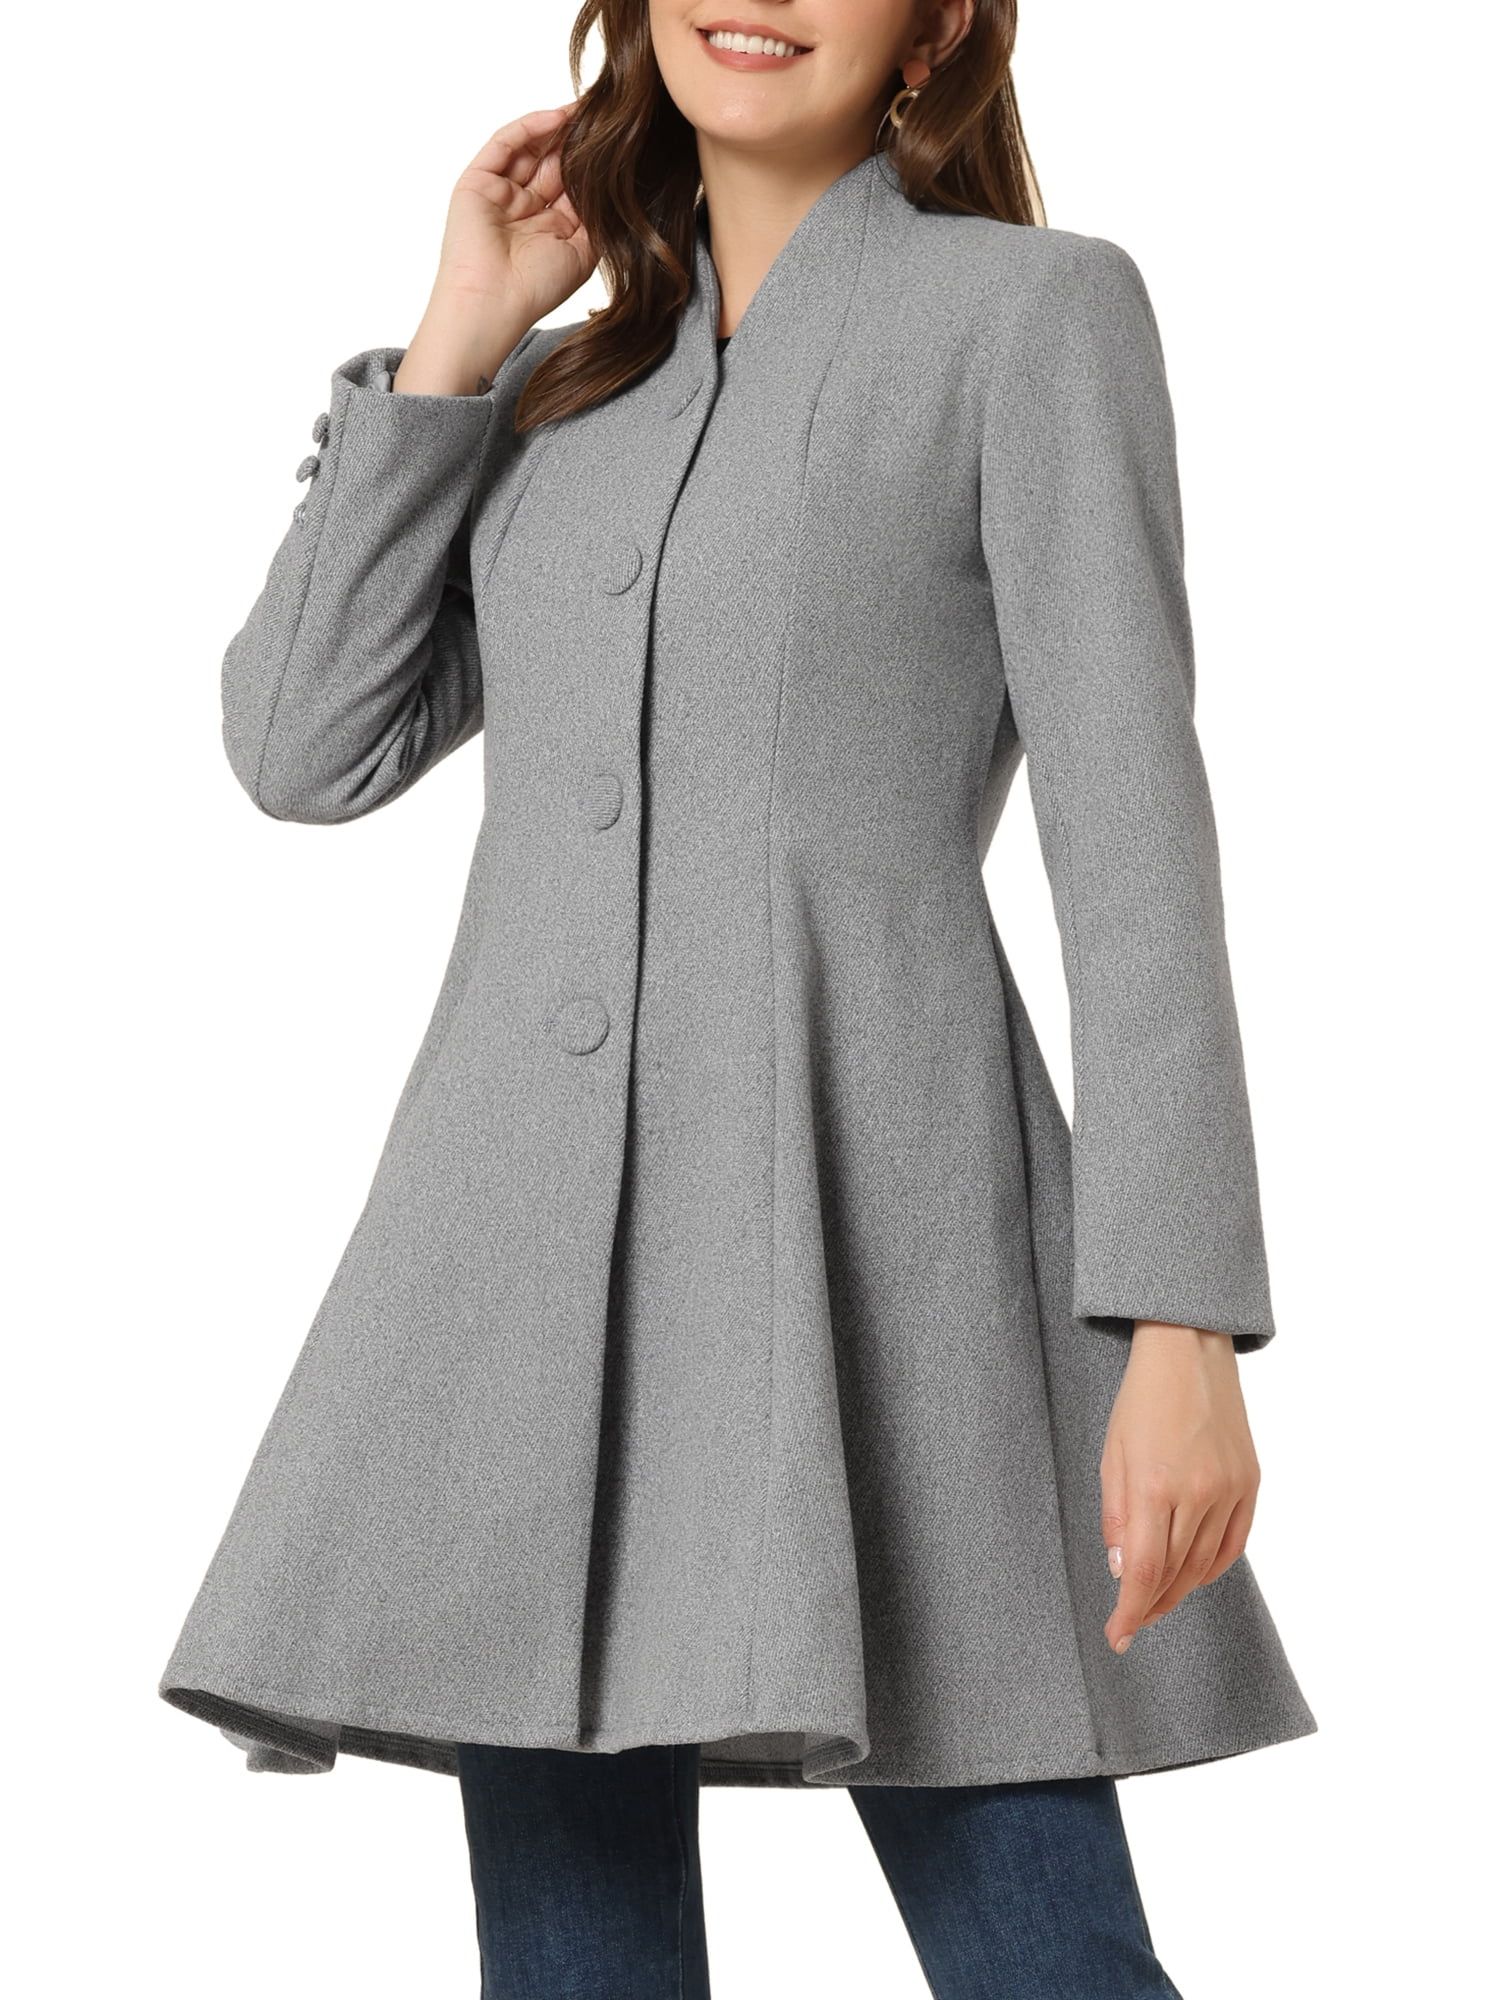 Allegra K Women's Winter A-Line Long Sleeve Single Breasted Peplum Hem Long Coat | Walmart (US)